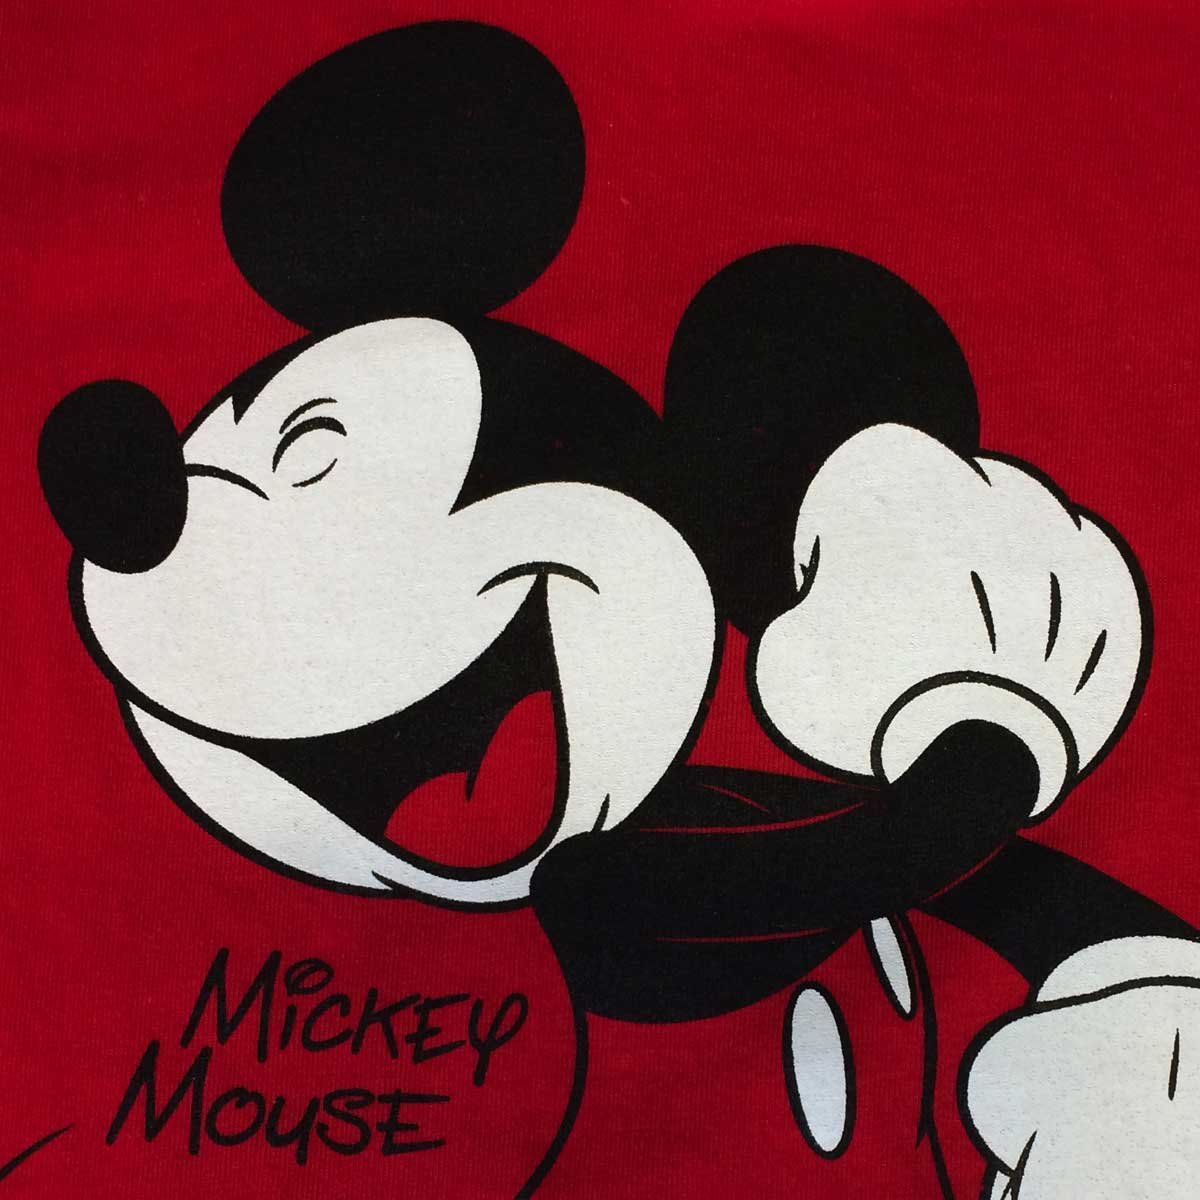 Pijama Estampada Mickey